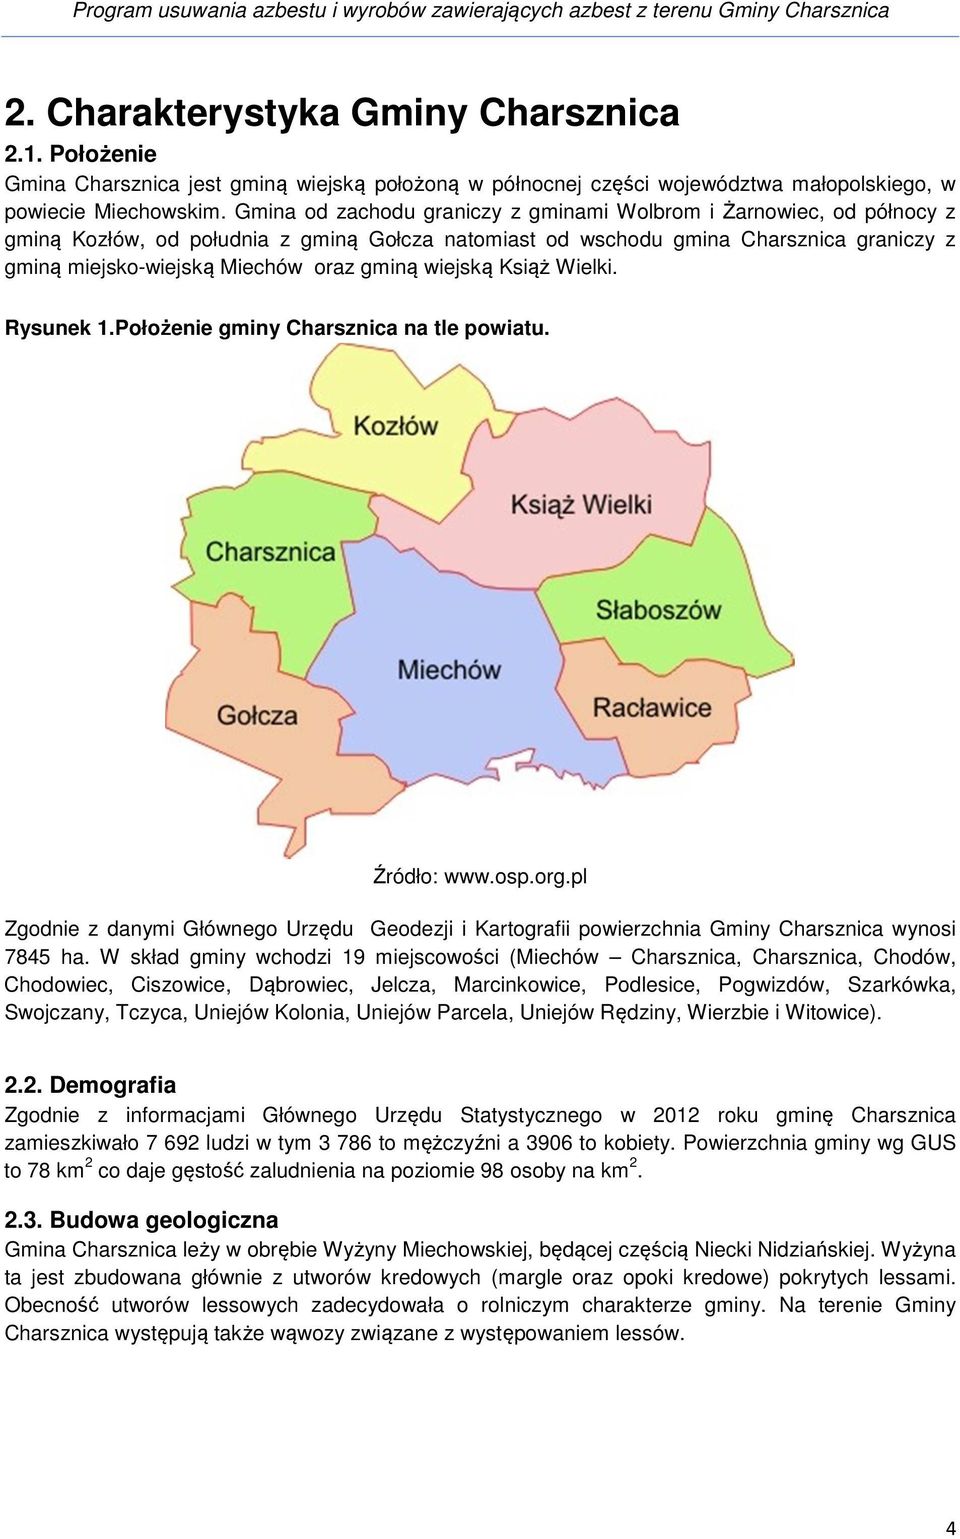 Gmina od zachodu graniczy z gminami Wolbrom i Żarnowiec, od północy z gminą Kozłów, od południa z gminą Gołcza natomiast od wschodu gmina graniczy z gminą miejsko-wiejską Miechów oraz gminą wiejską